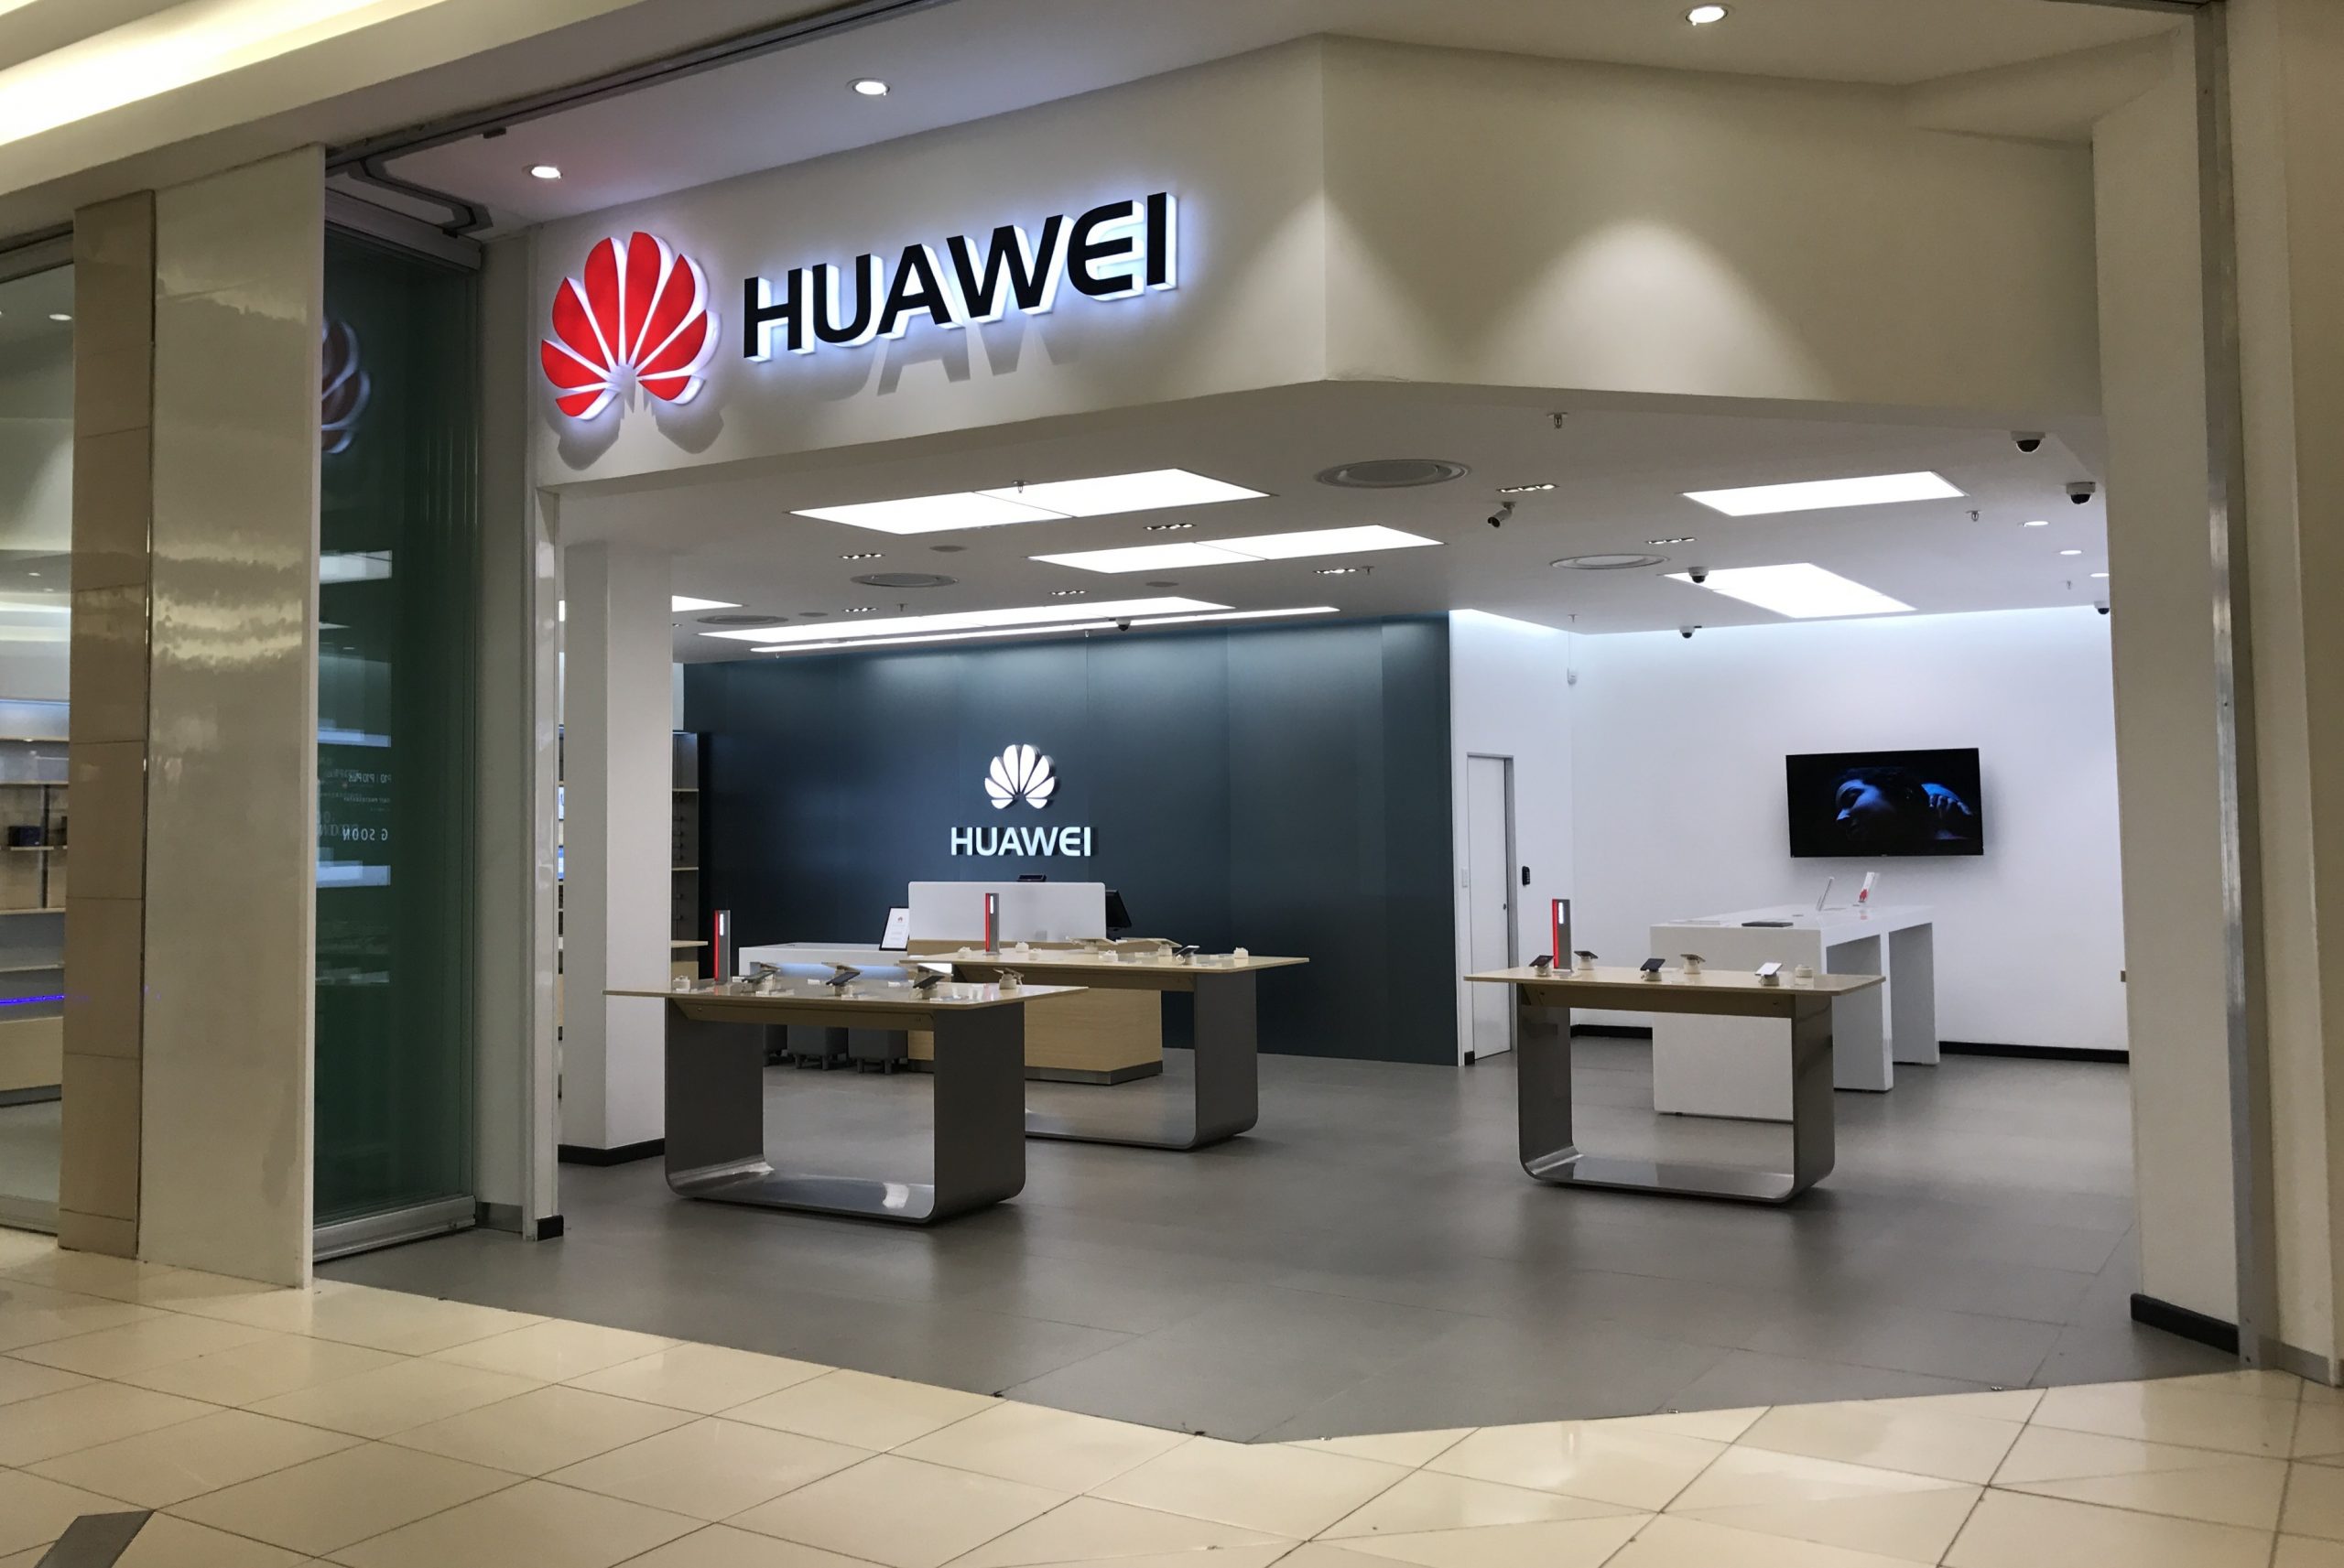 Medien: Huawei hat die Lieferung von Smartphones und anderen Geräten nach Russland wieder aufgenommen. Huawei selbst schweigt noch immer